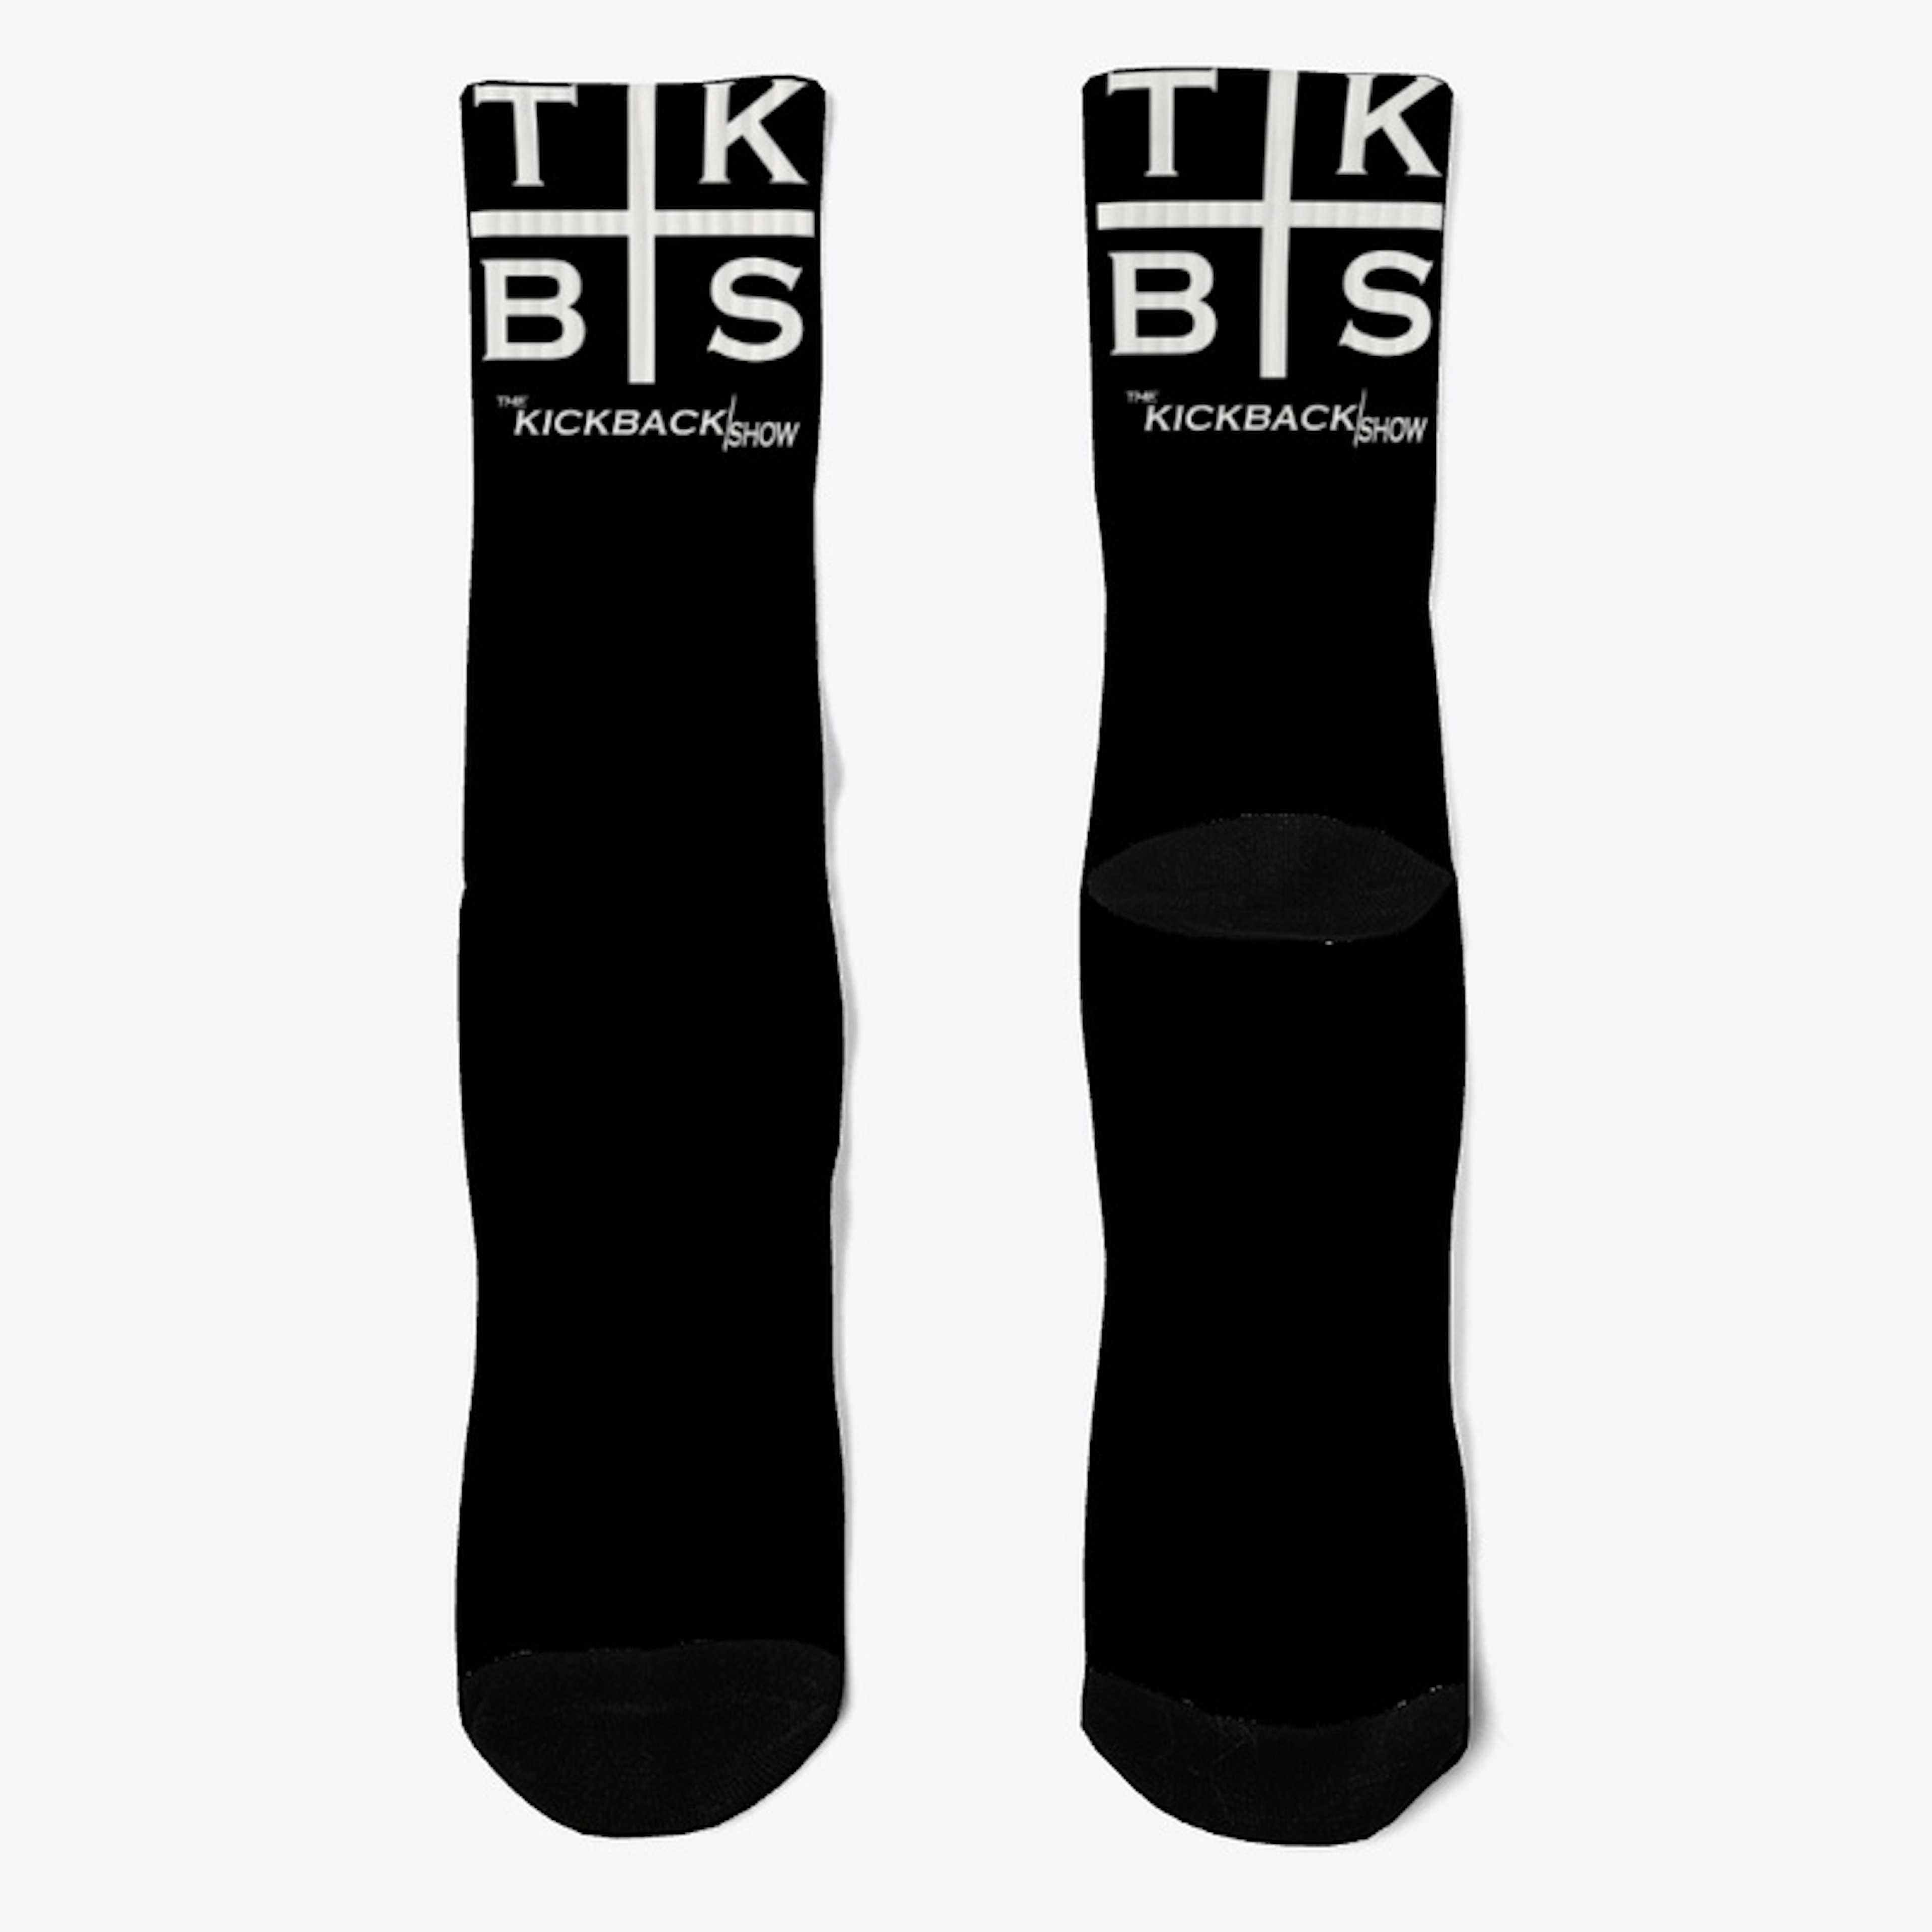 The Kickback Socks